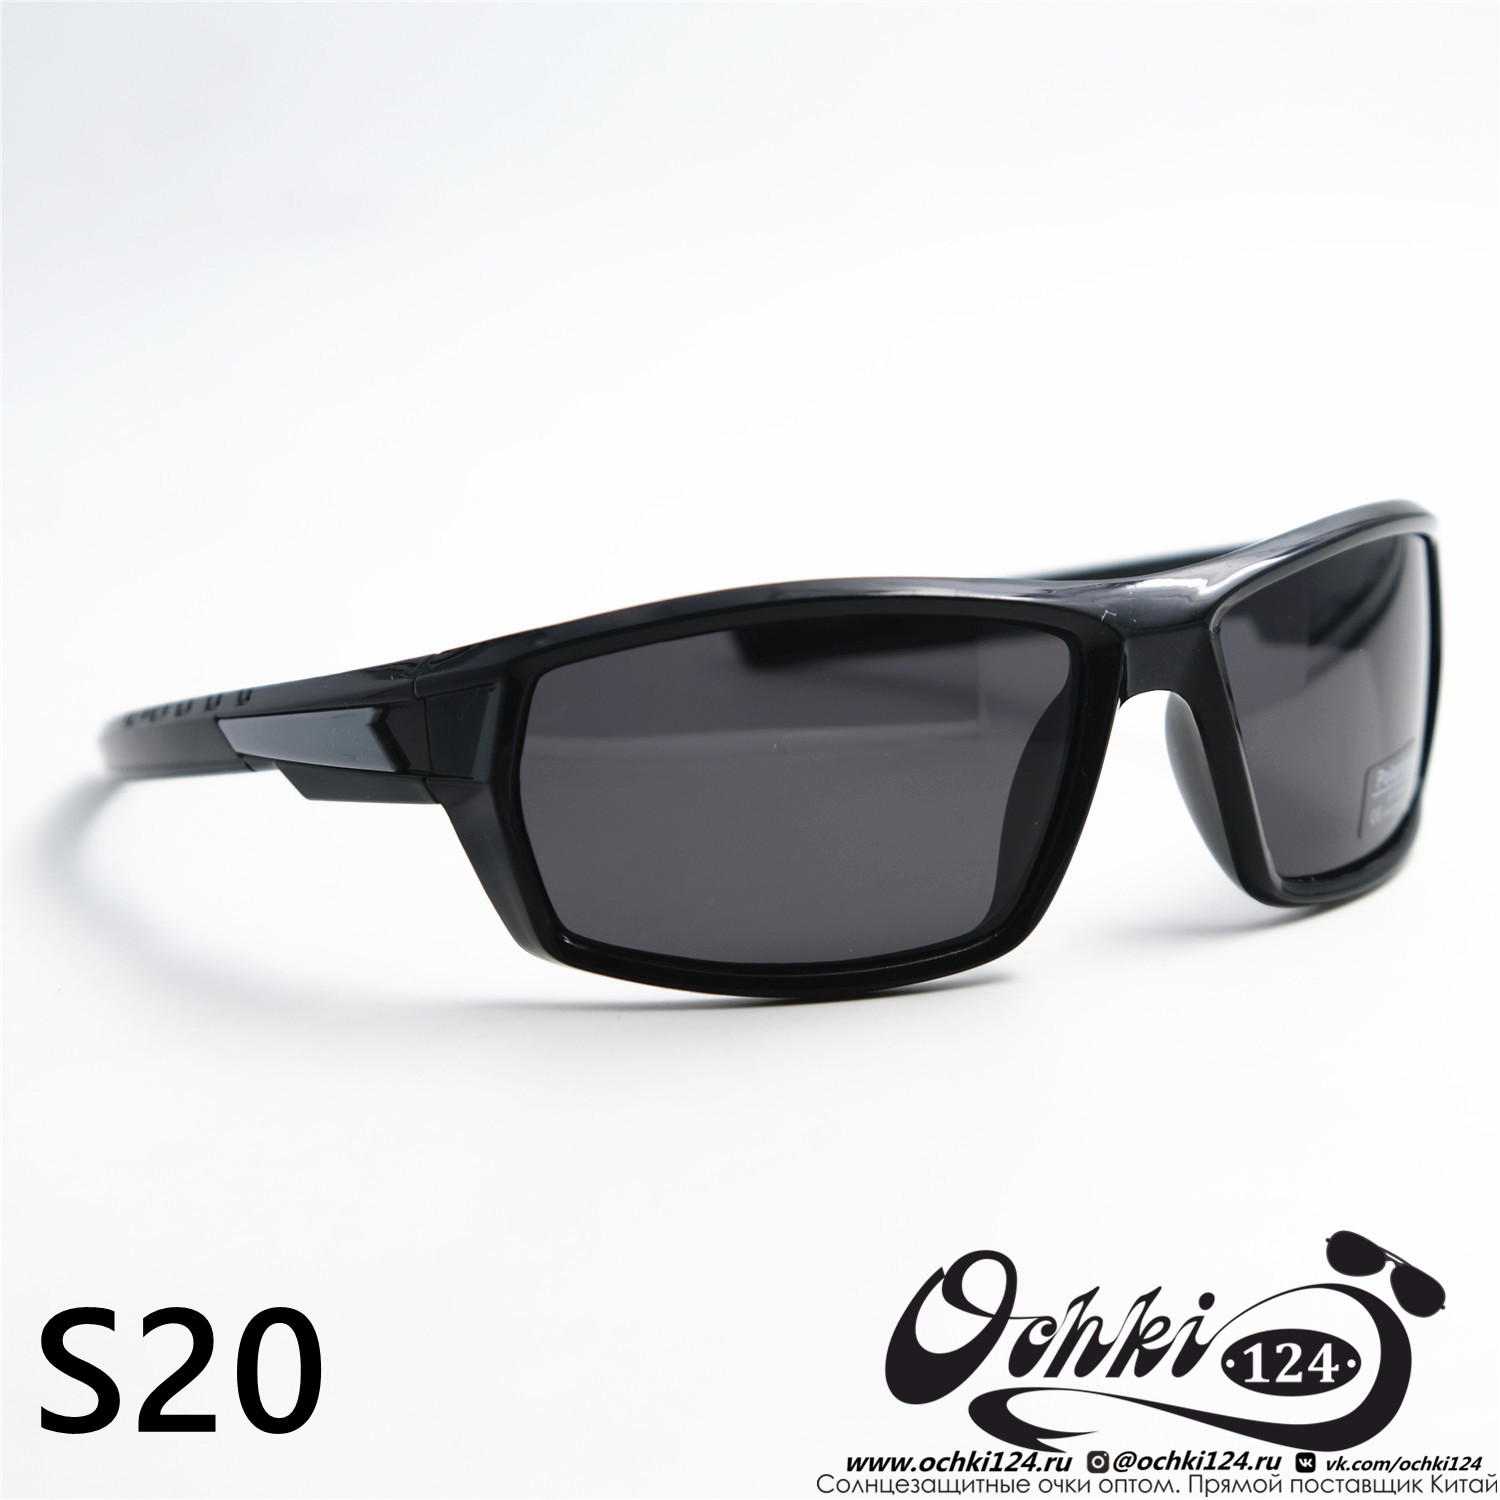  Солнцезащитные очки картинка 2023 Мужские Спорт Materice S20-C4 